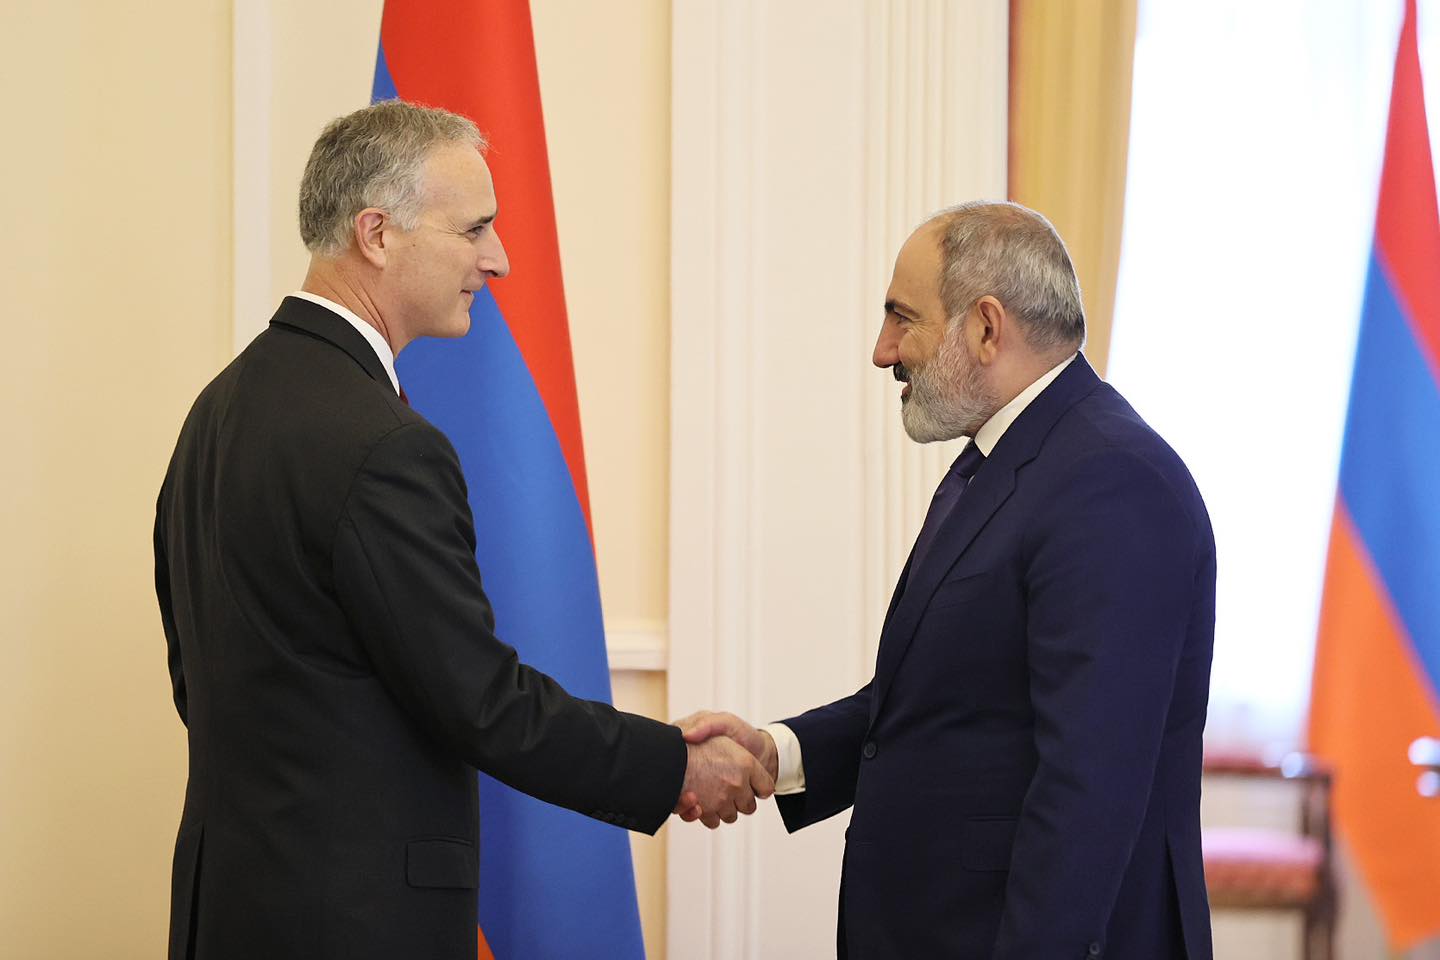 Փաշինյանն ու Բոնոն քննարկել են ՀՀ-Ադրբեջան հարաբերությունների կարգավորման գործընթացը